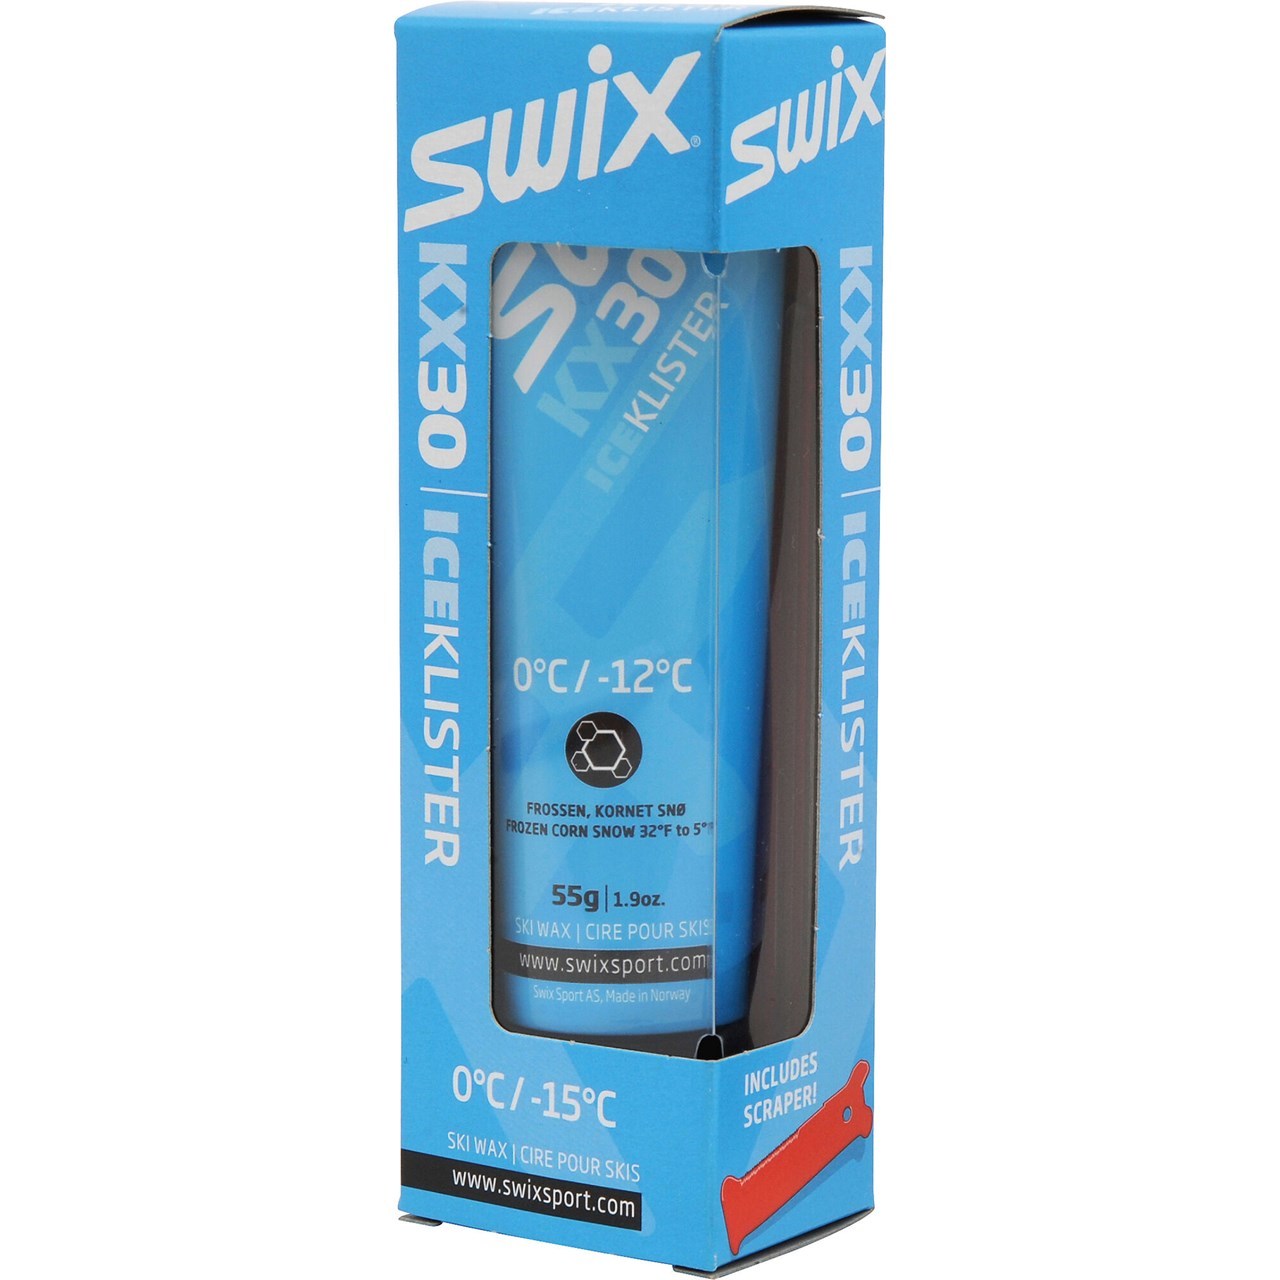 Swix KX30 Blue Ice Klister 55g 0/-12°C